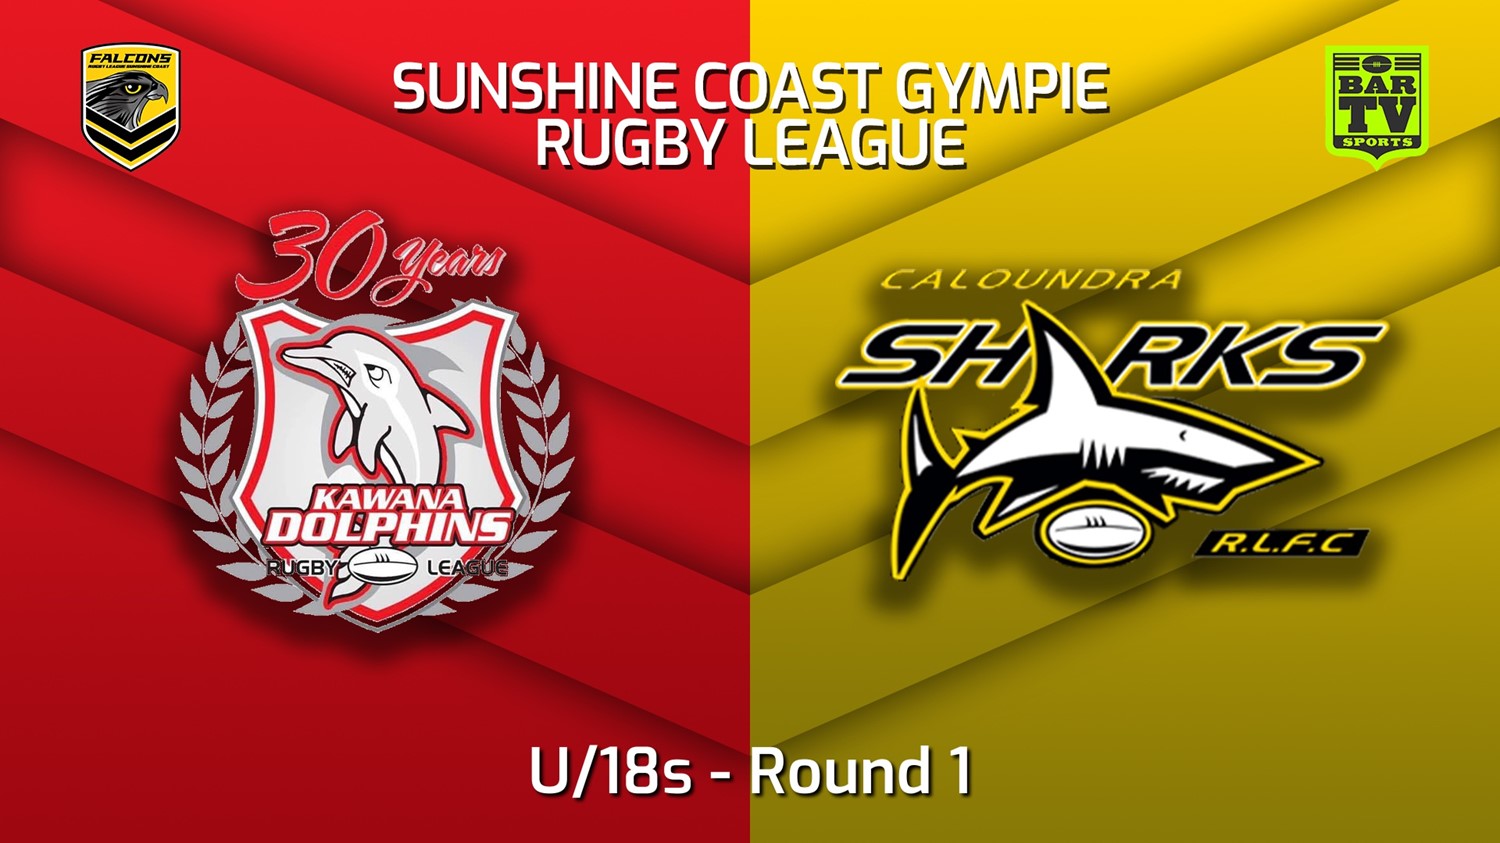 220402-2022 Sunshine Coast Gympie Rugby League Round 1 - U/18s - Kawana Dolphins v Caloundra Sharks Minigame Slate Image